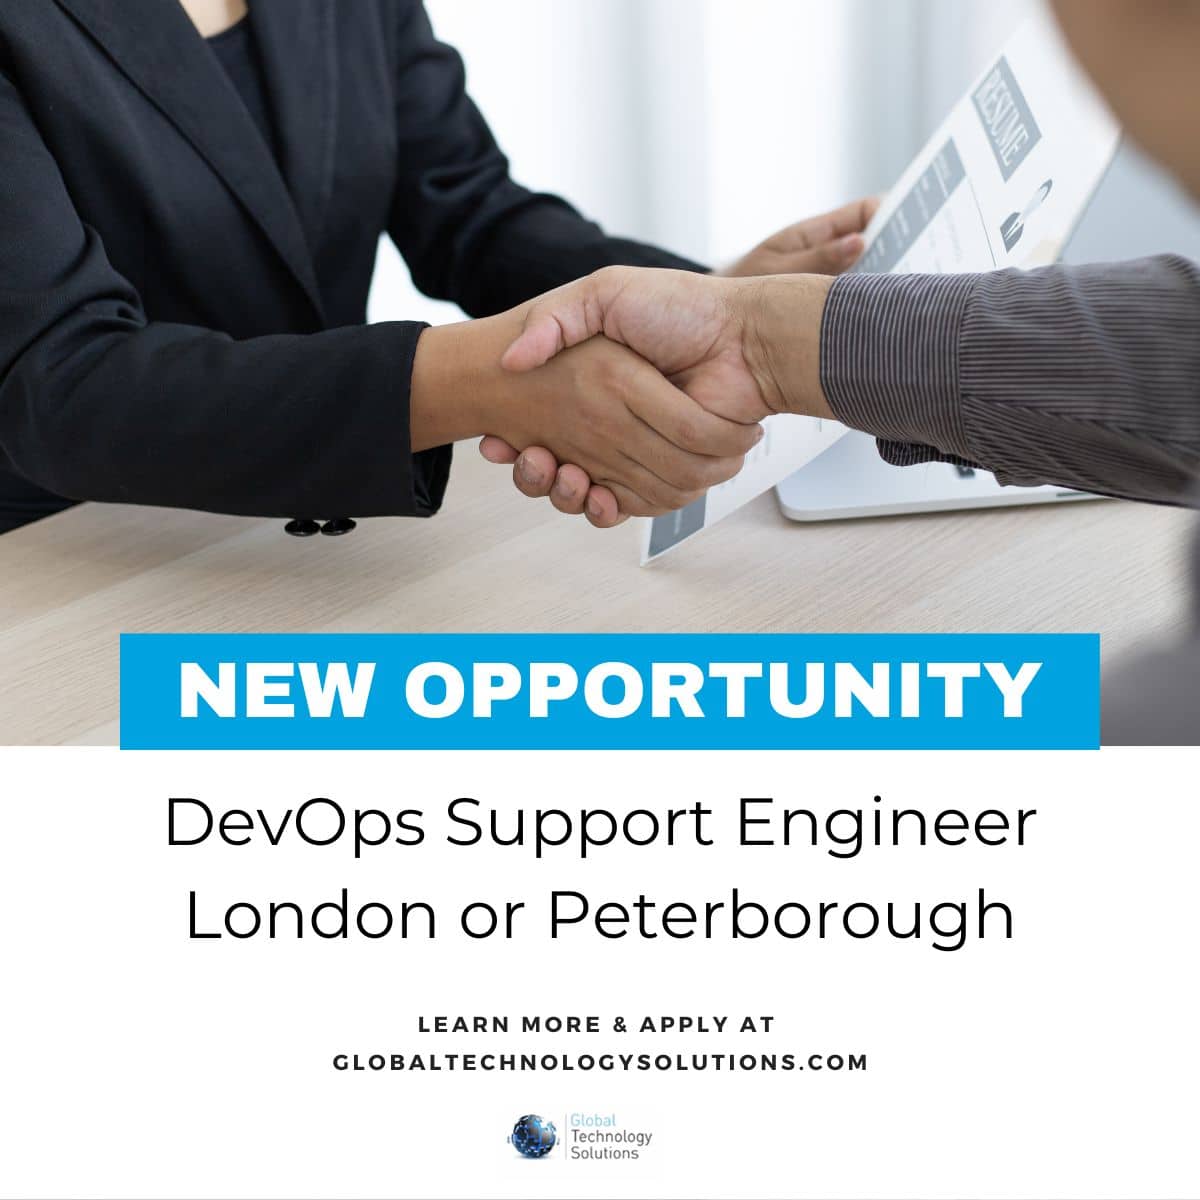 DevOps Jobs - DevOps Support Engineer in London or Peterborough.